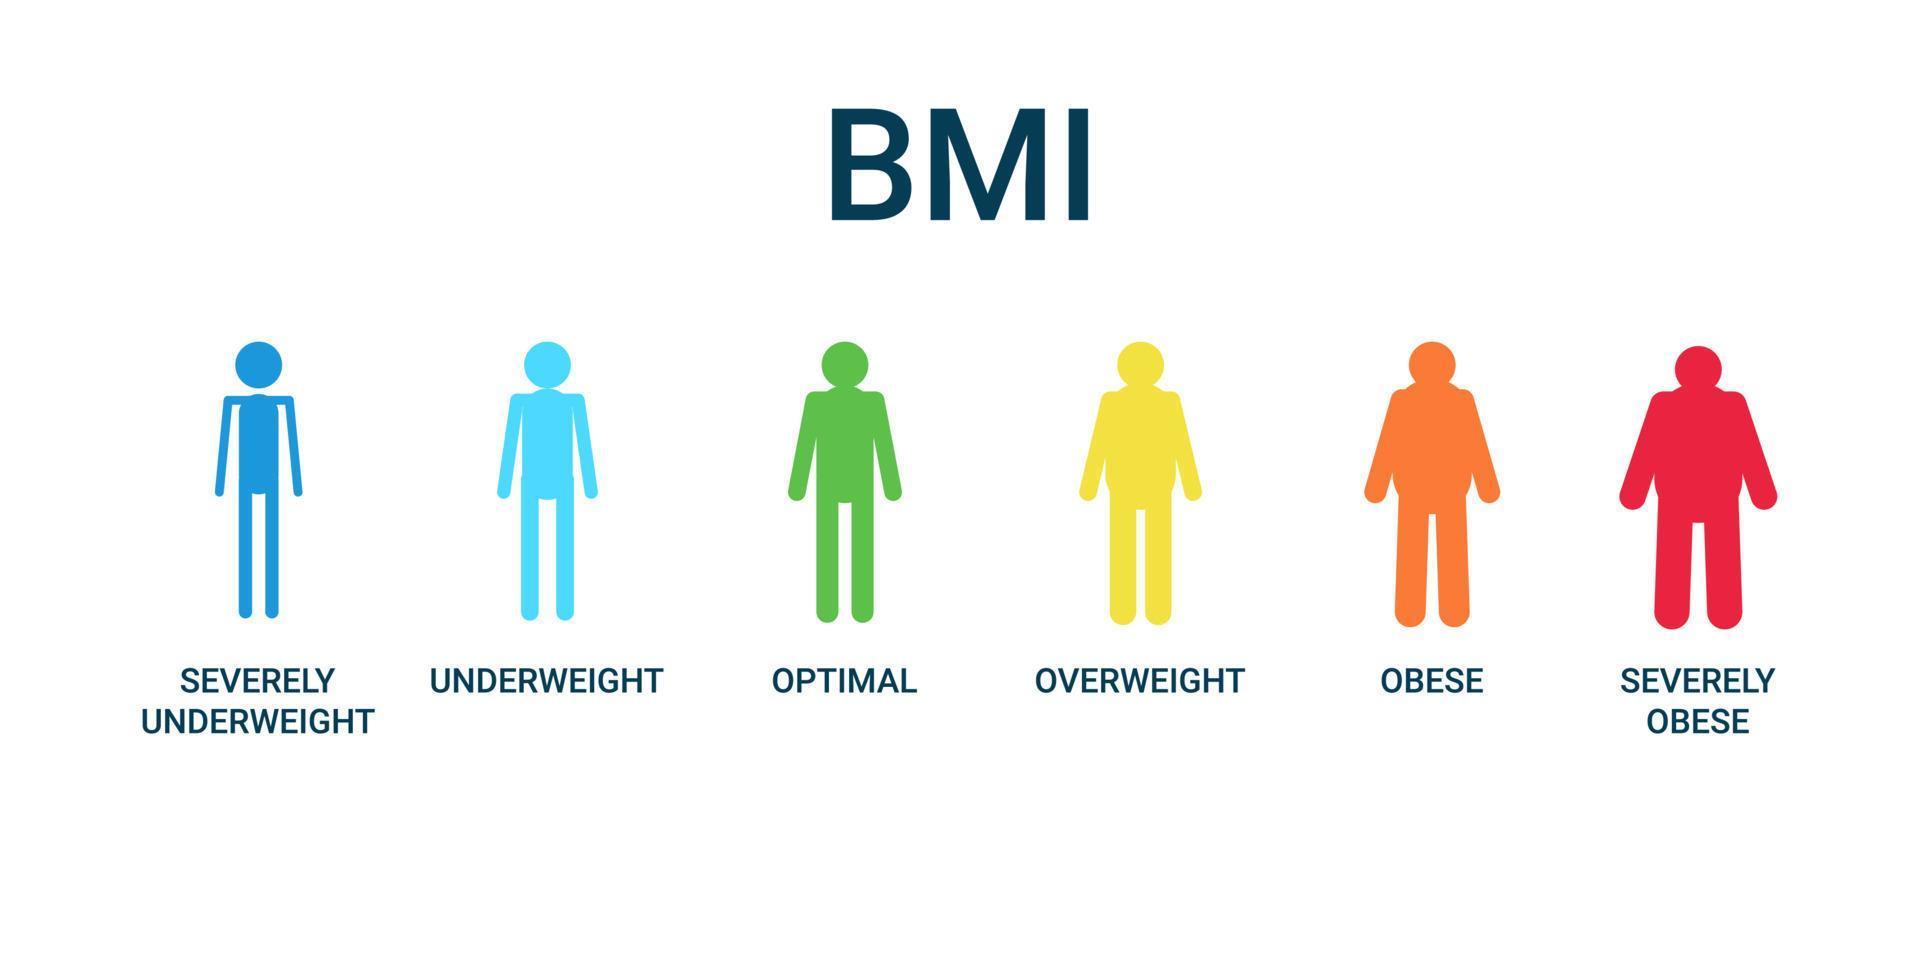 BMI-Kategorien-Diagramm, Body-Mass-Index und Skala-Masse-Menschen. stark untergewichtig, untergewichtig, optimal, übergewichtig, fettleibig, stark fettleibig Graph Kontrolle Gesundheit. Vektor-Illustration vektor